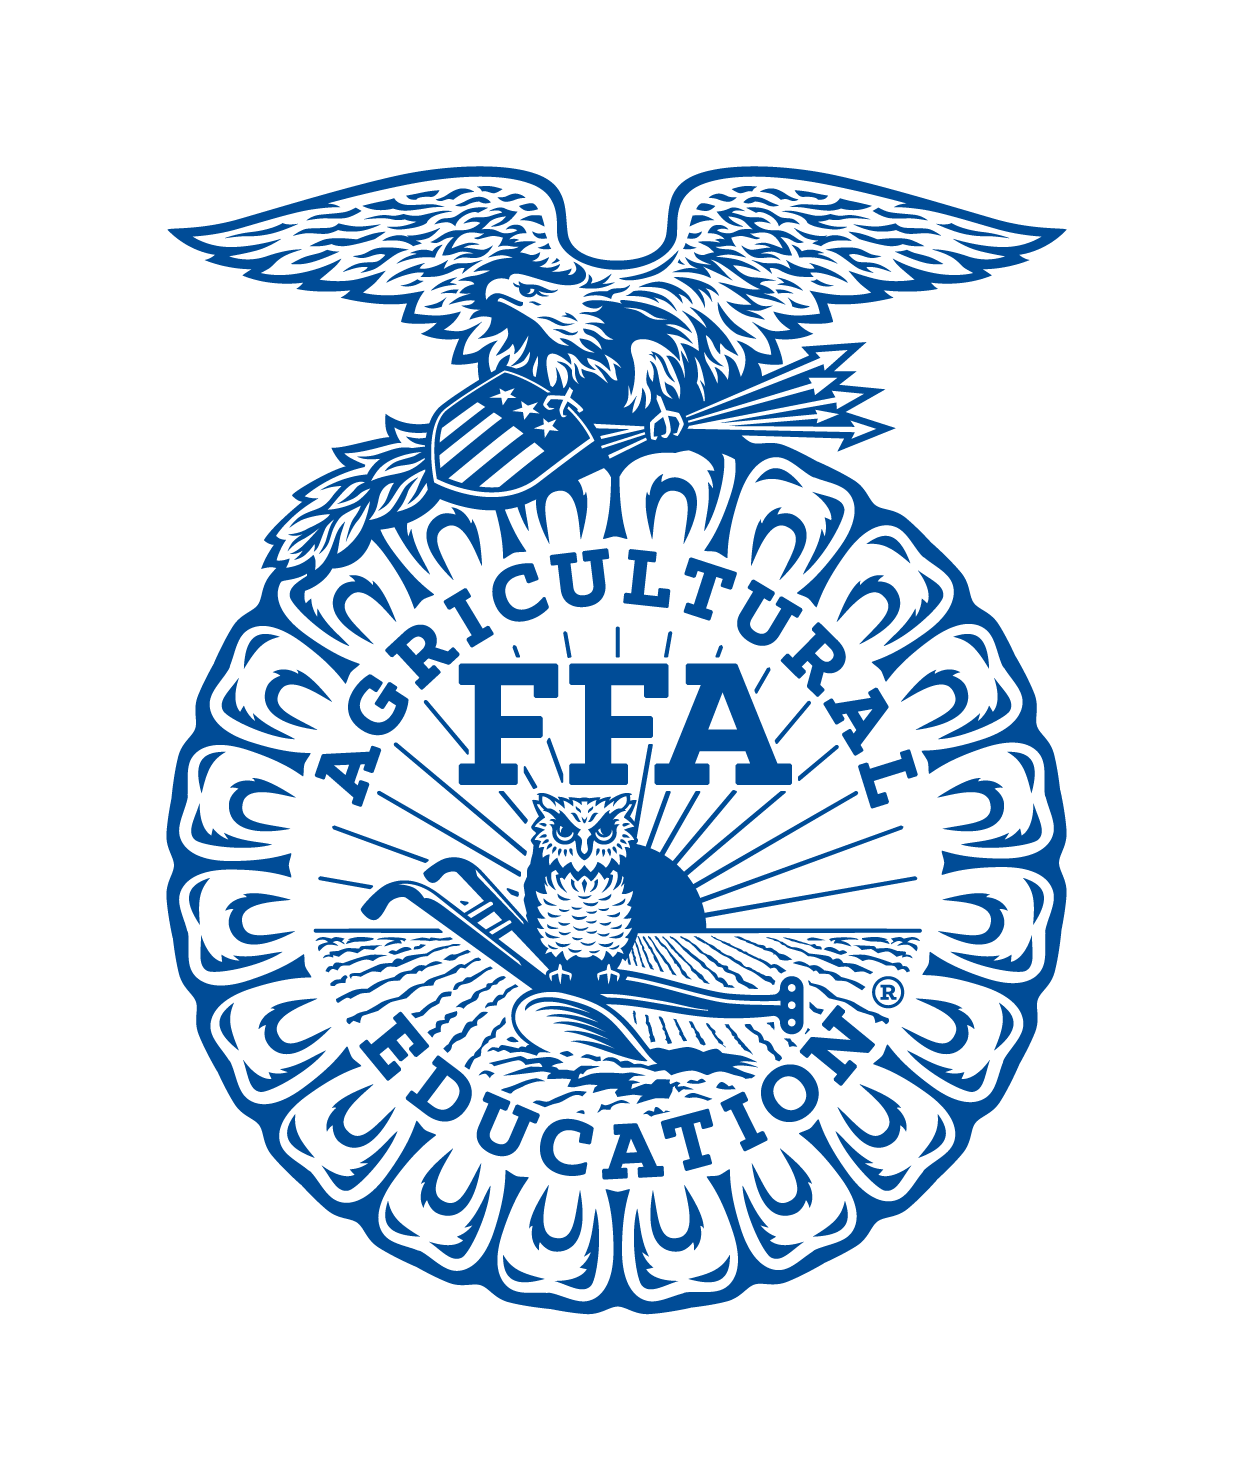 Iowa FFA Association